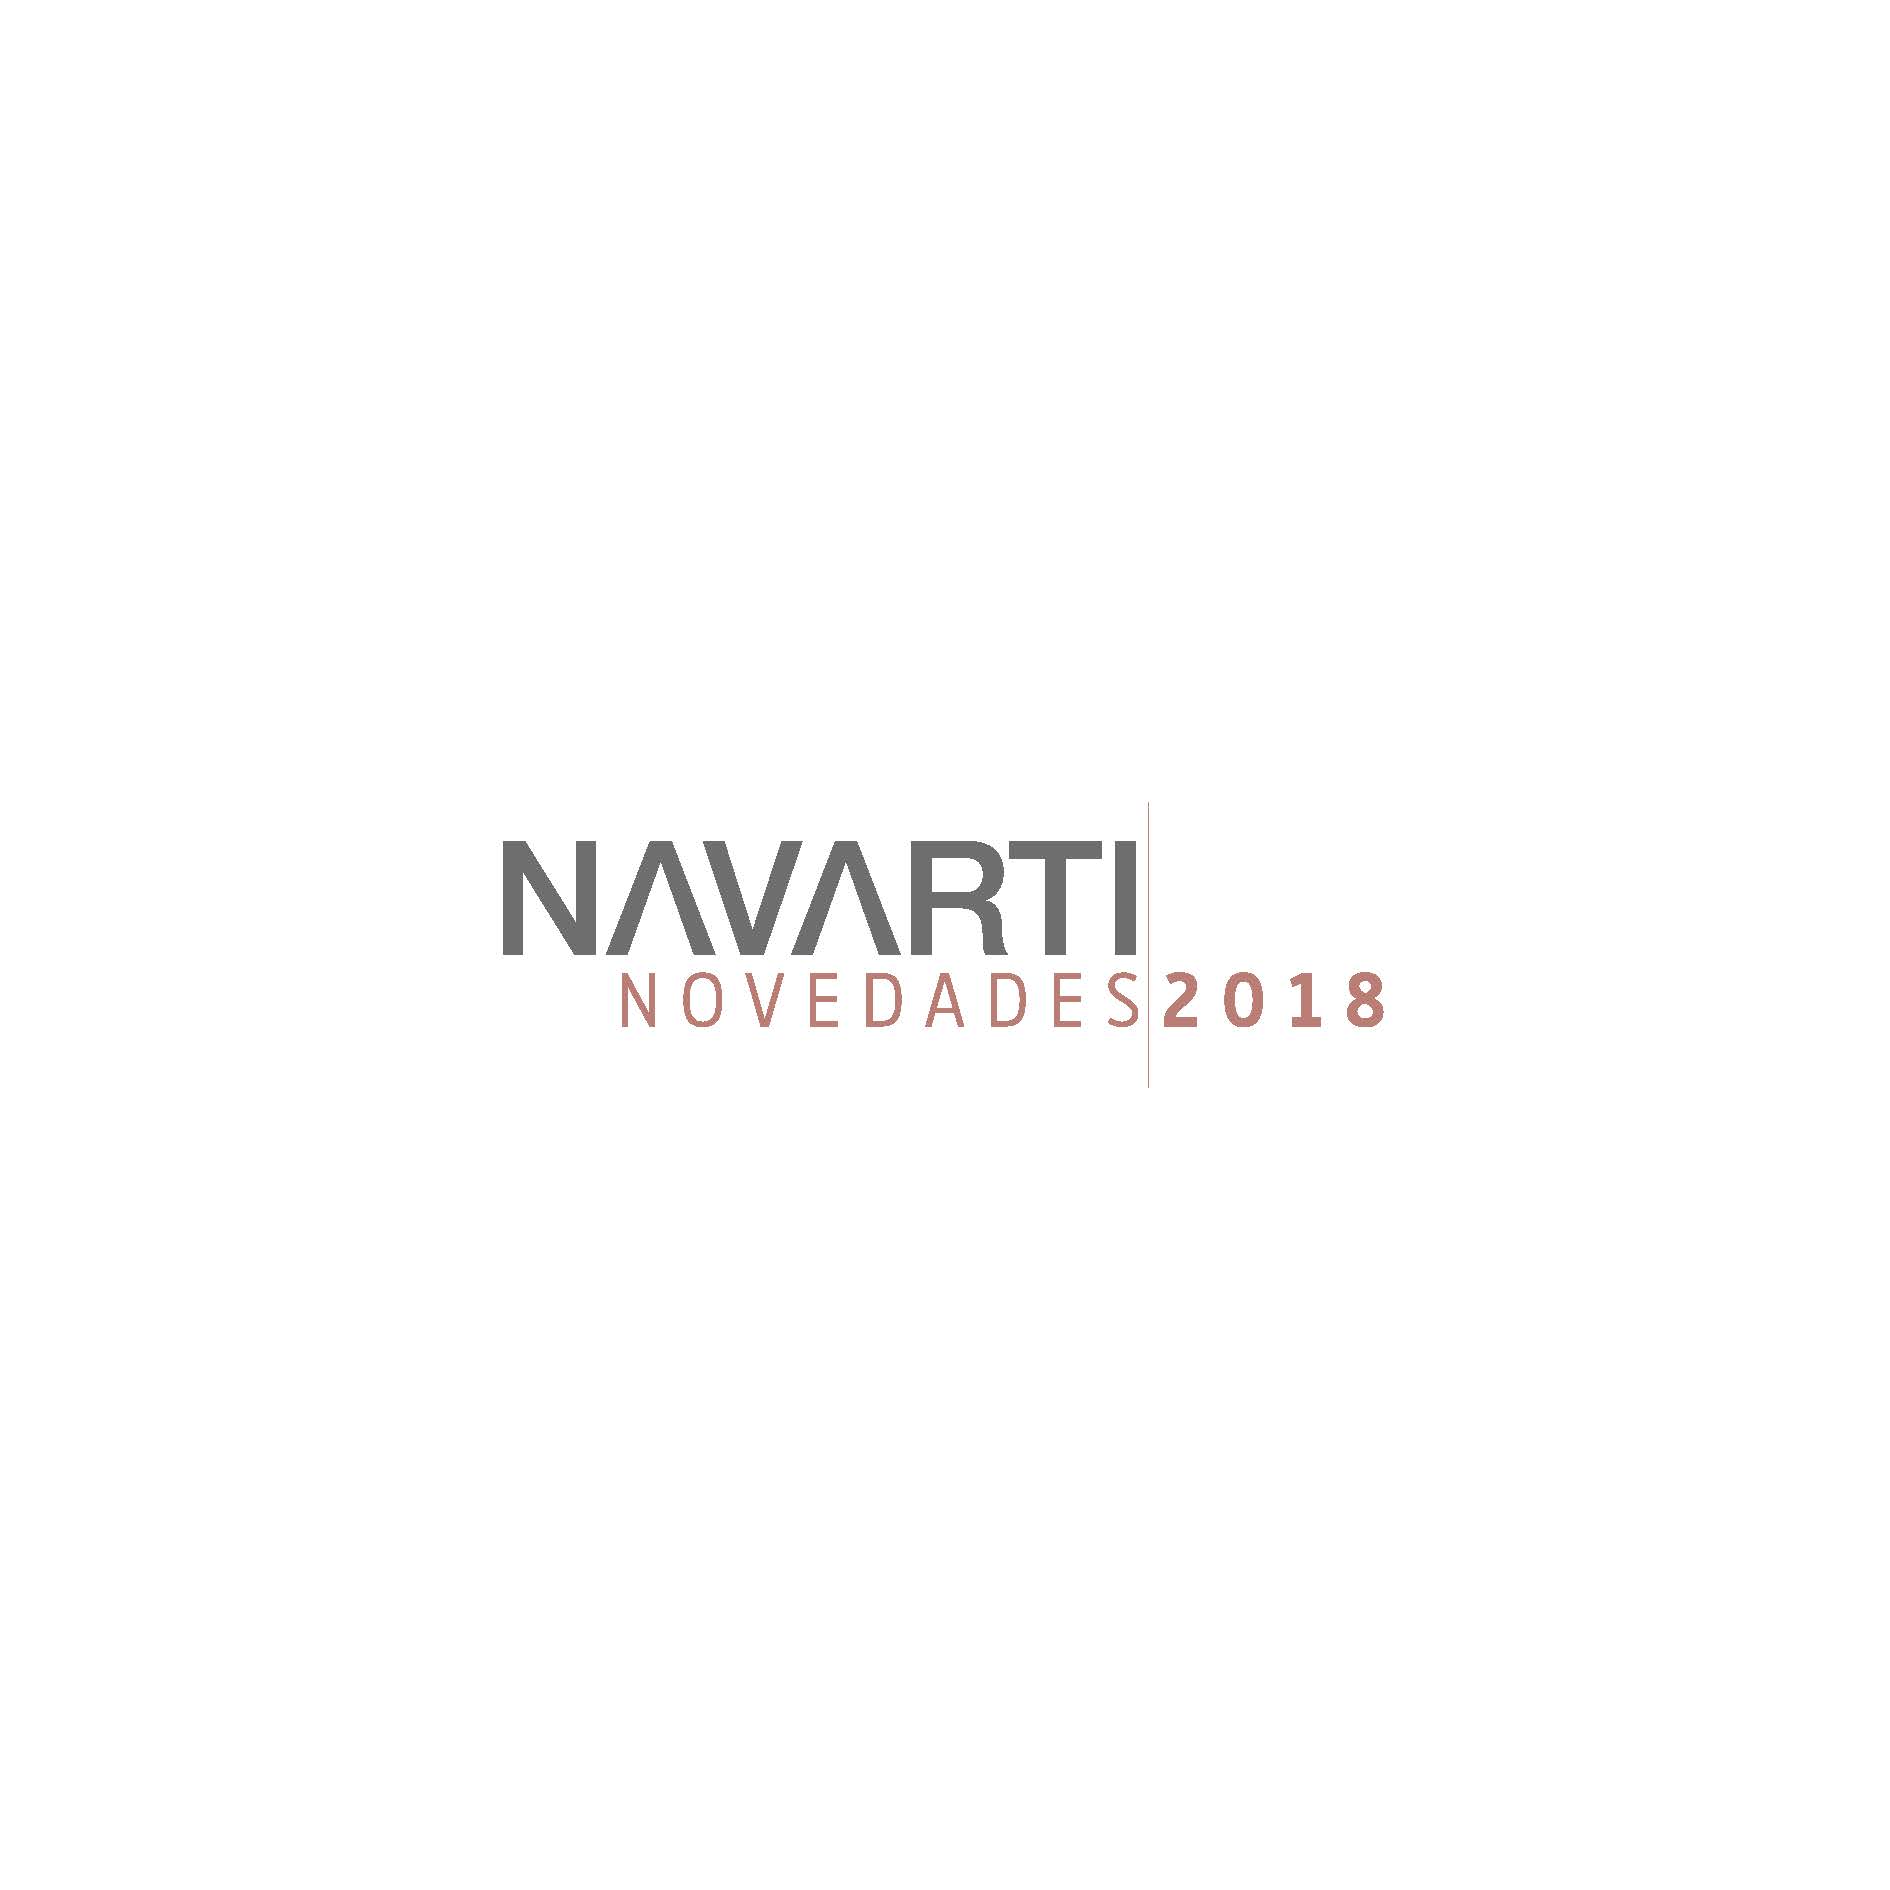 Novedades Navarti 2018